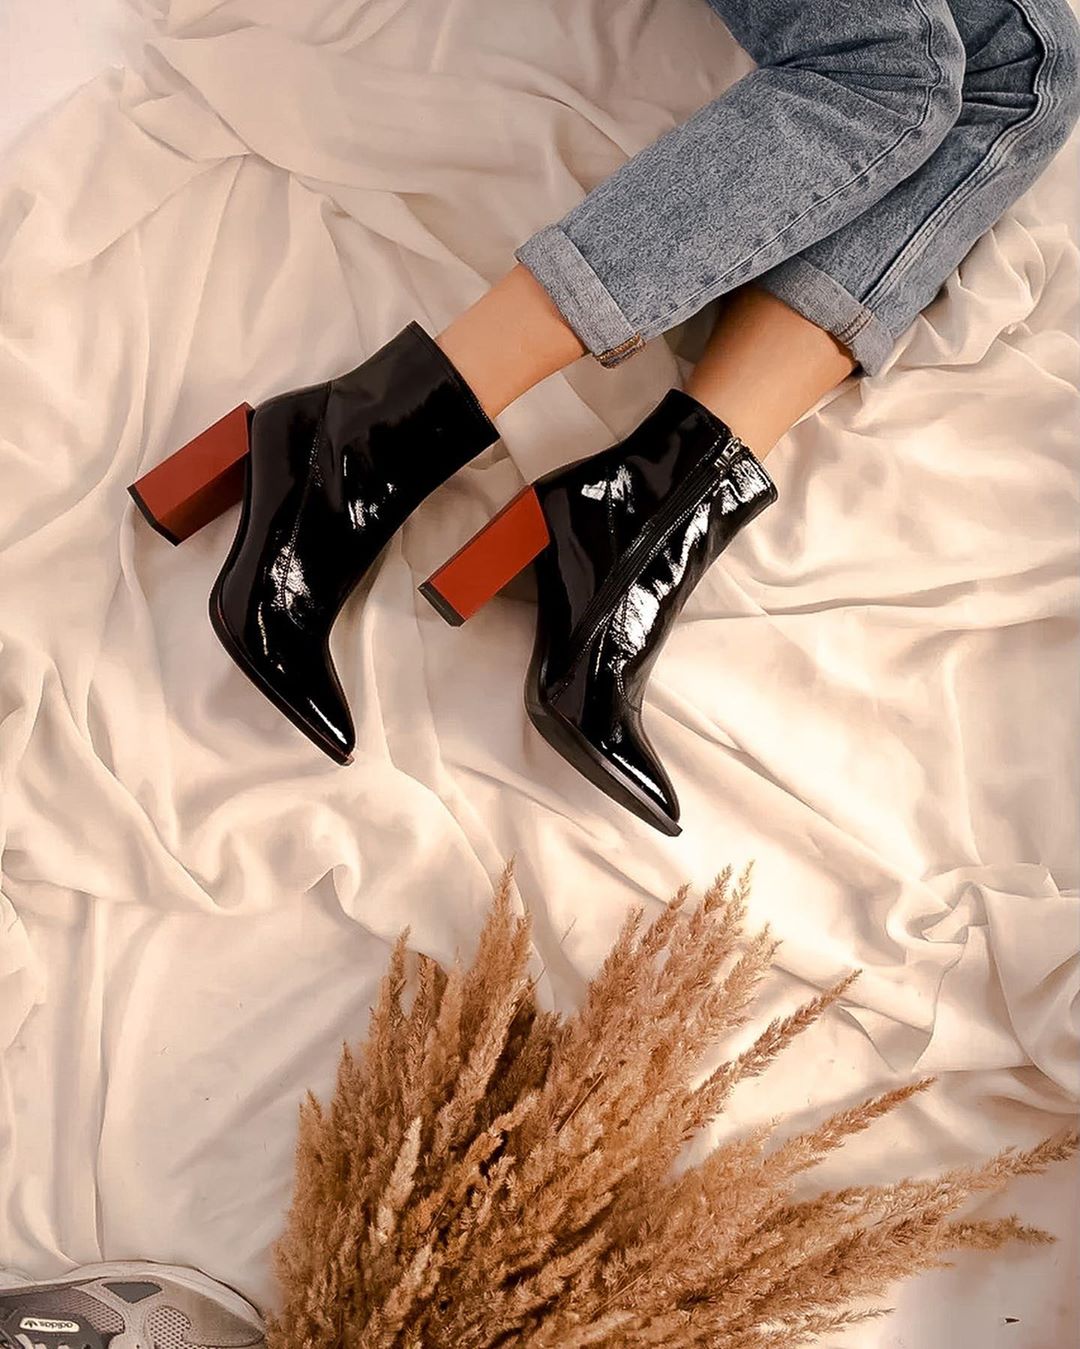 ОБУВЬ И АКСЕССУАРЫ - В номинации «Самые популярные женские ботинки сентября от SoloStyle» побеждают…
⠀
🏆Наши две стильные новинки:
Лаковые ботинки на контрастном каблуке. Для тех, кто любит смелые акц...